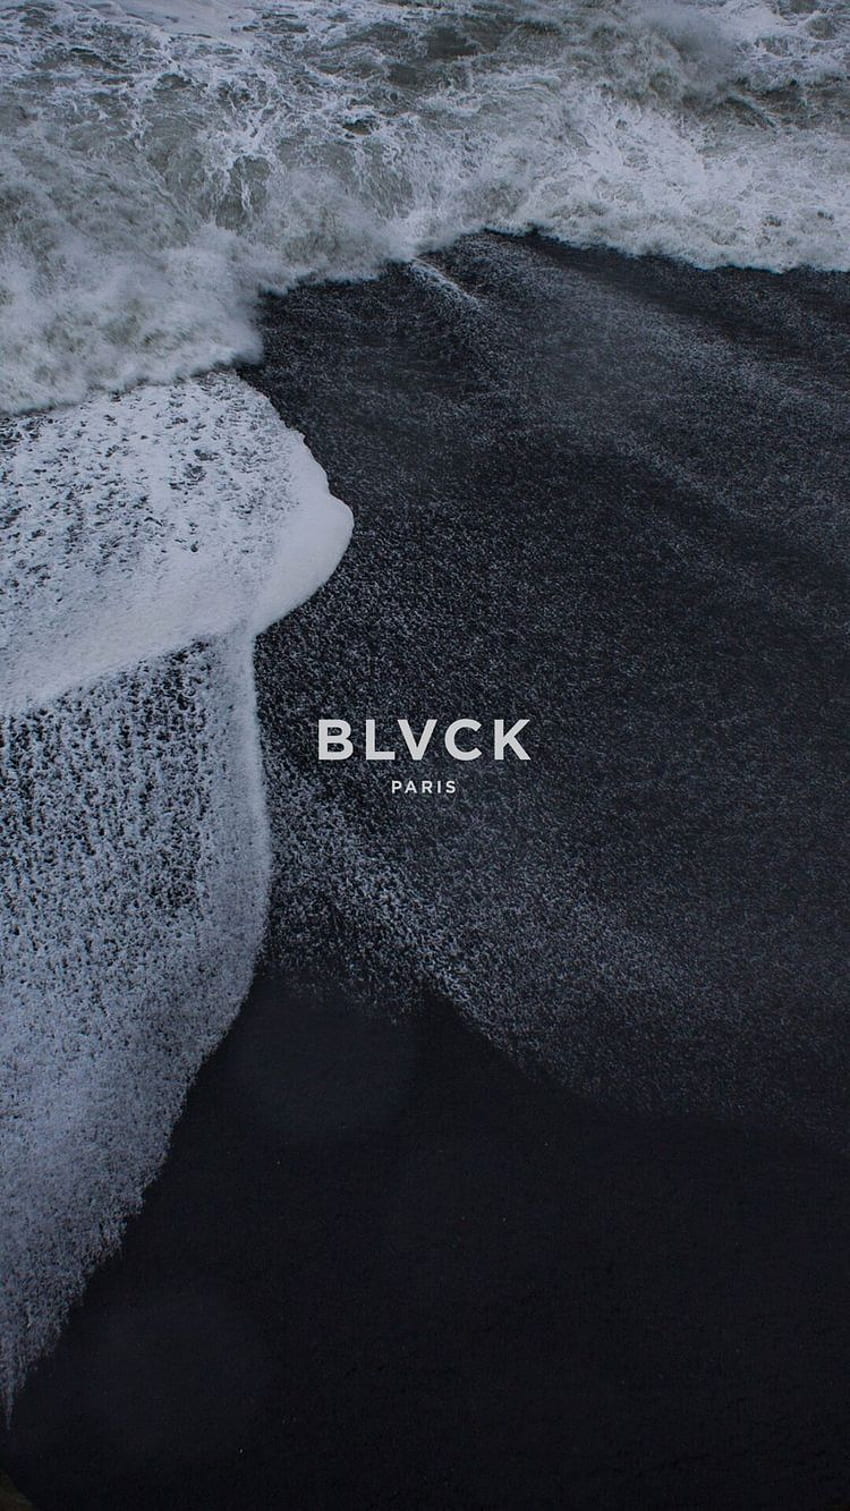 BLVCK PARIS 아이디어. blvck, 파리, 블랙 HD 전화 배경 화면